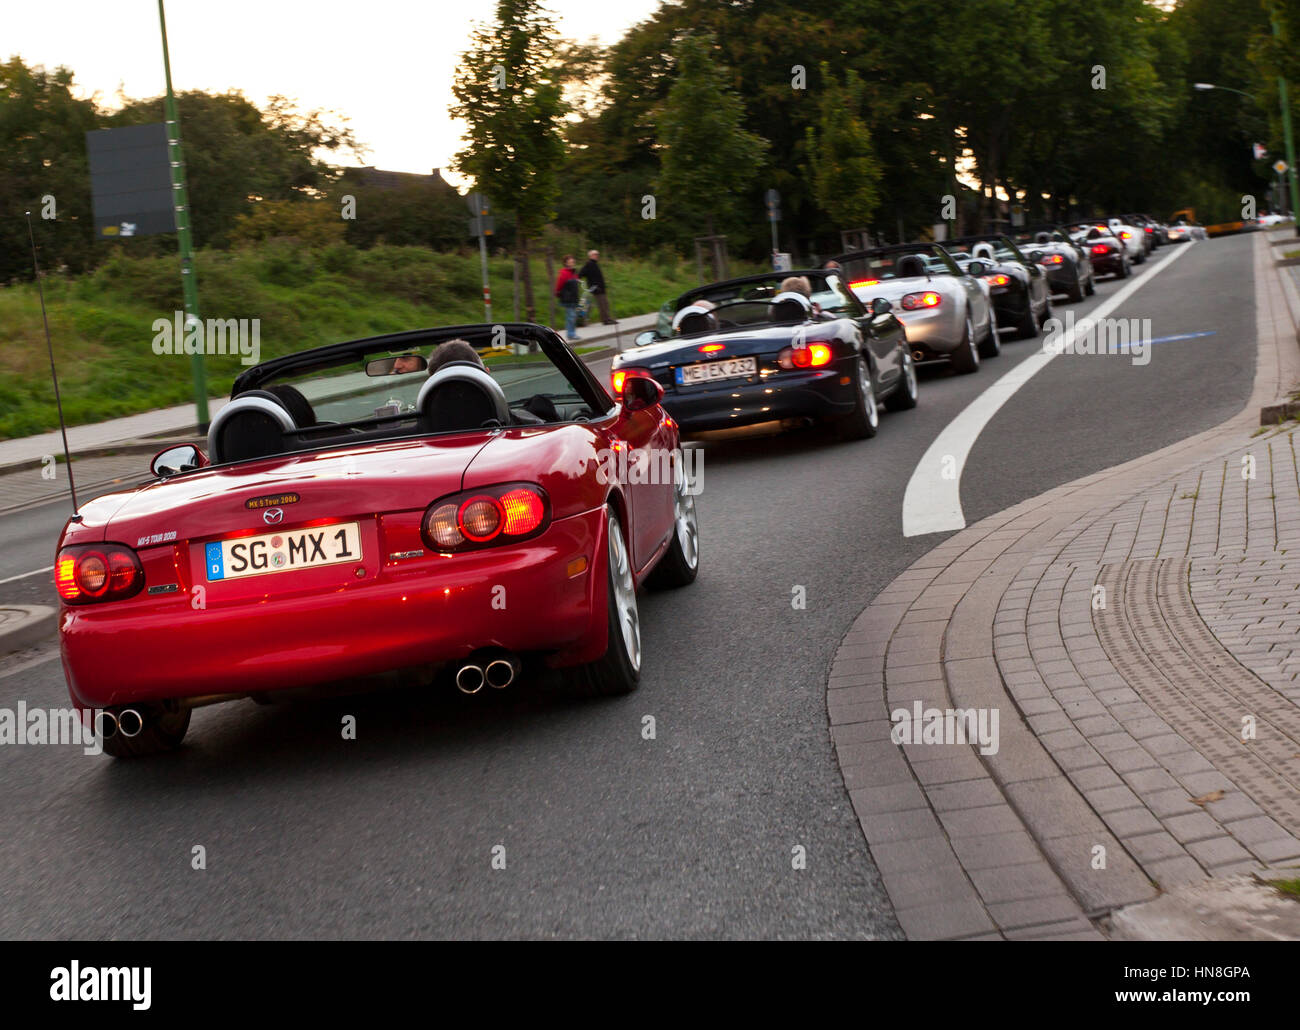 Essen, Allemagne - 18 septembre 2010 : plus de 400 voitures gagner un nouveau record mondial Guinness pour la plus longue Mazda MX-5 Miata corso jamais dans la célébration de Banque D'Images